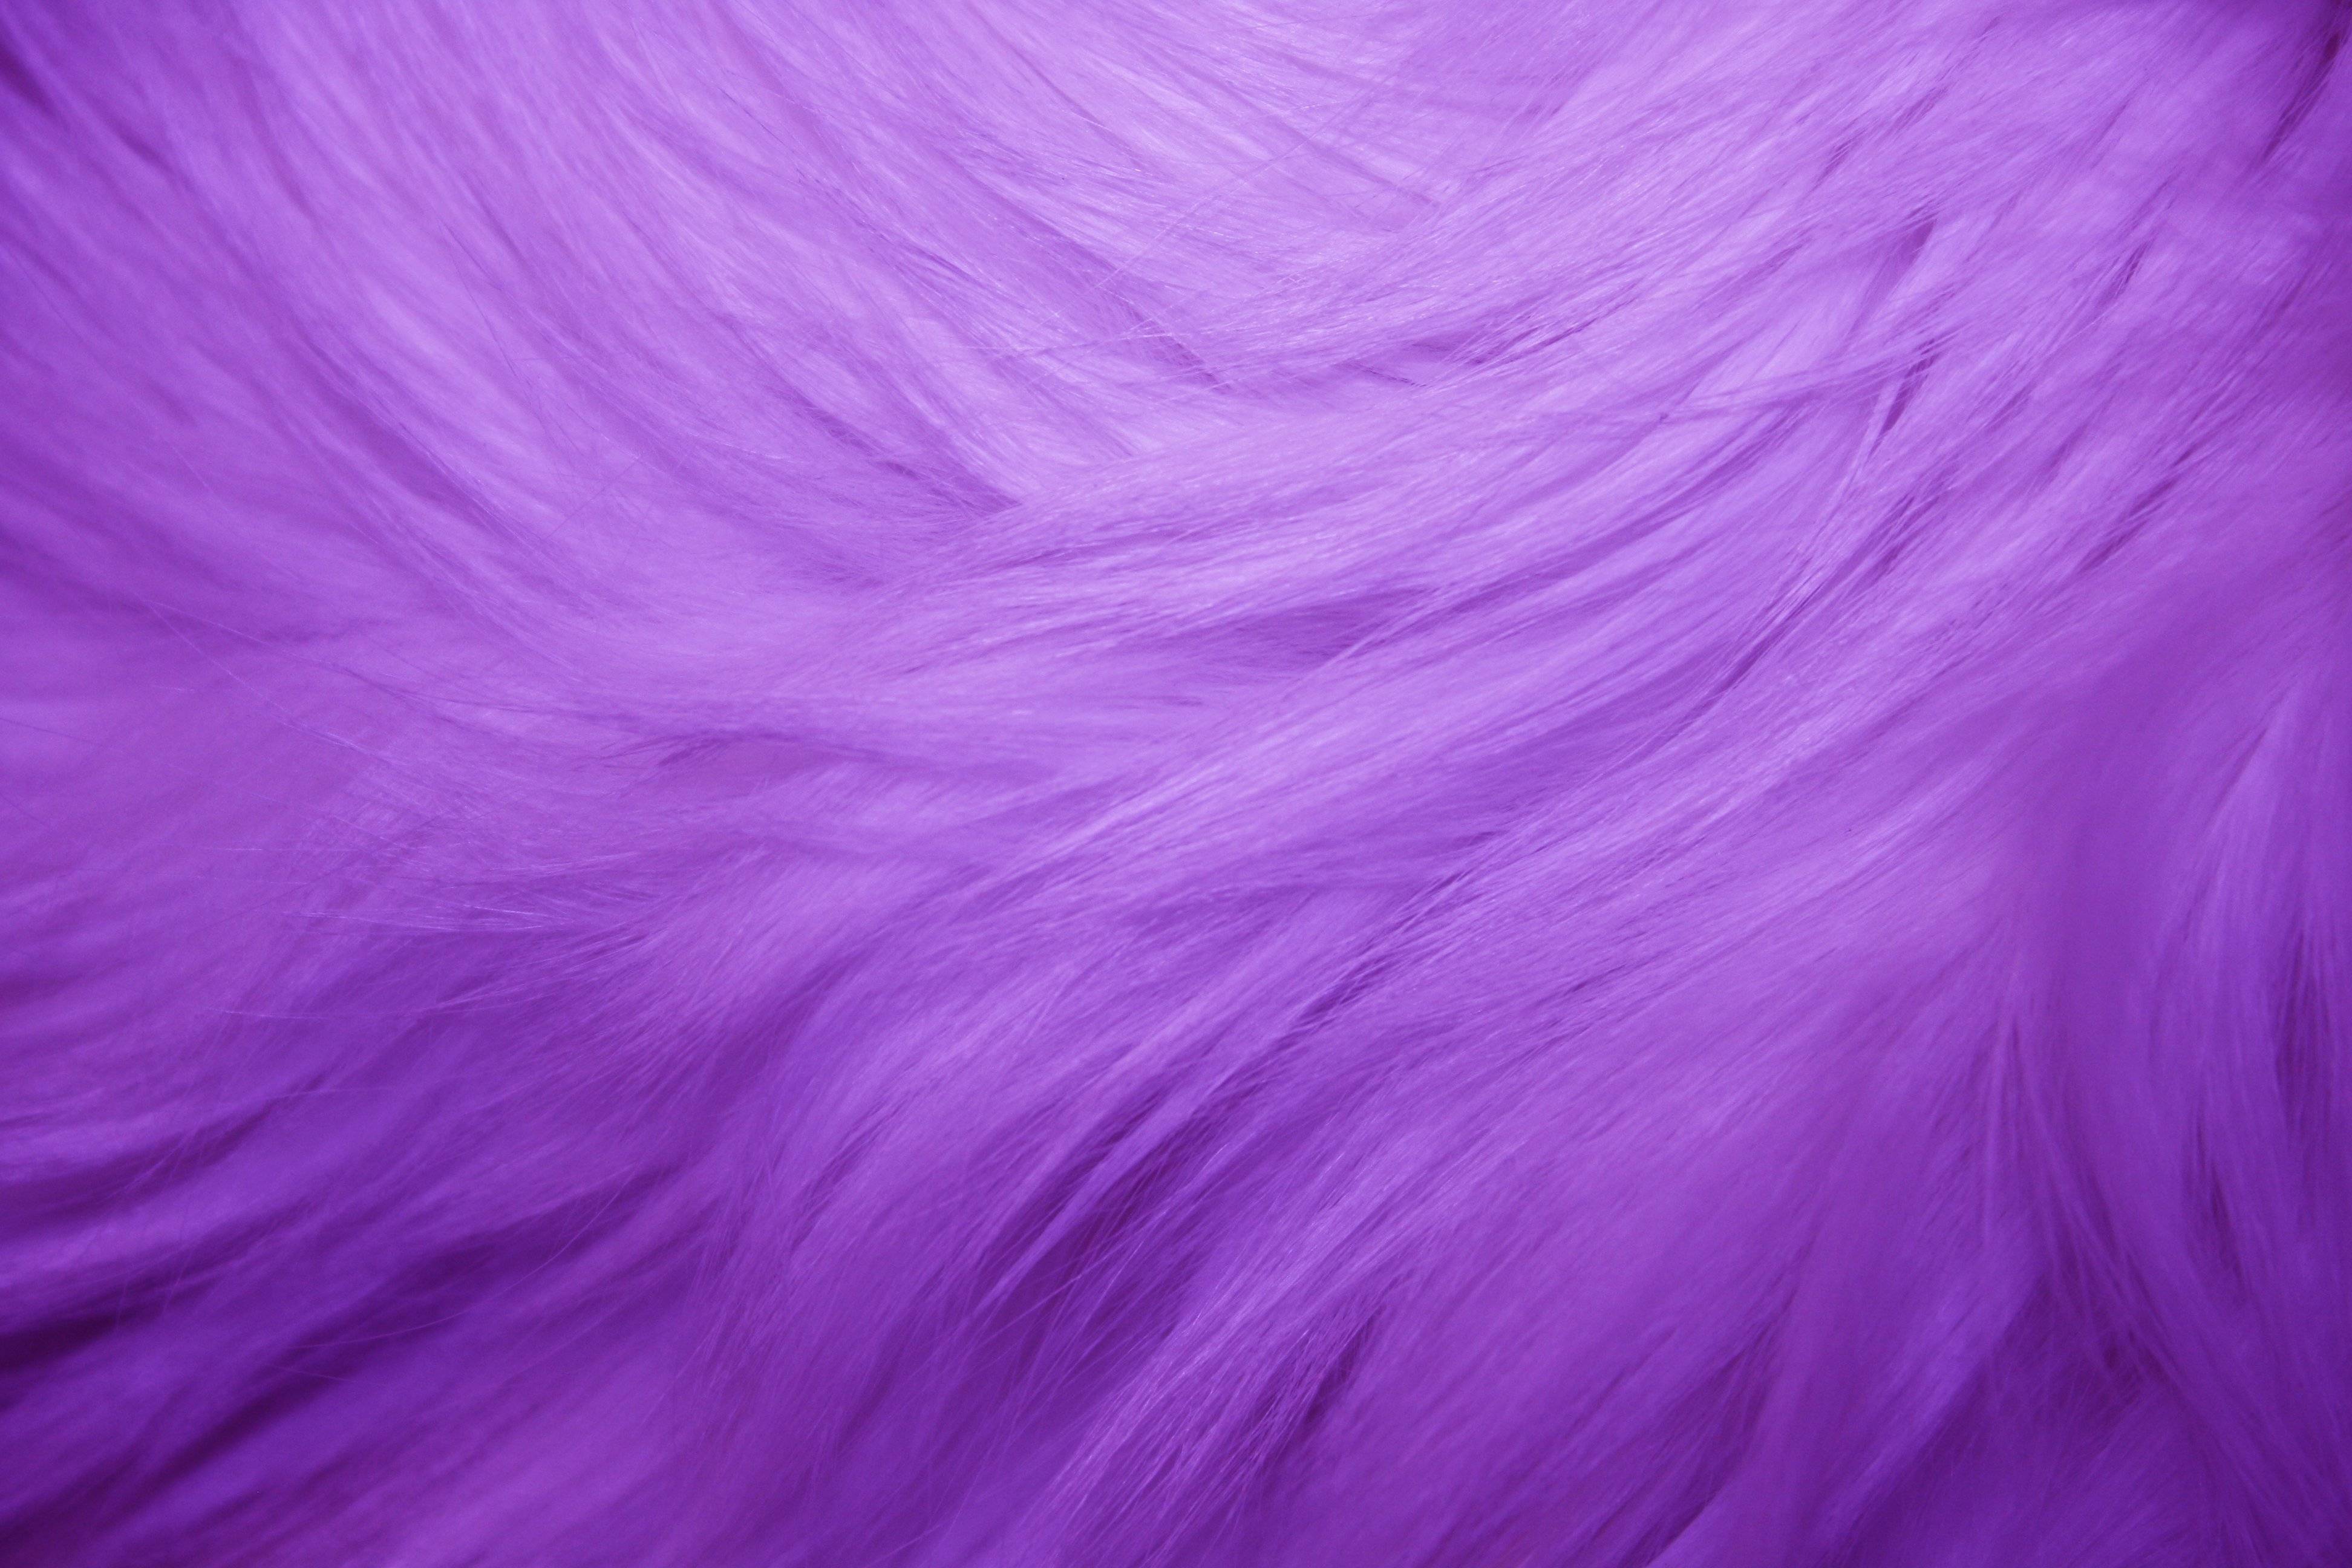 Purple Fur Texture Picture. Free Photograph. Photo Public Domain